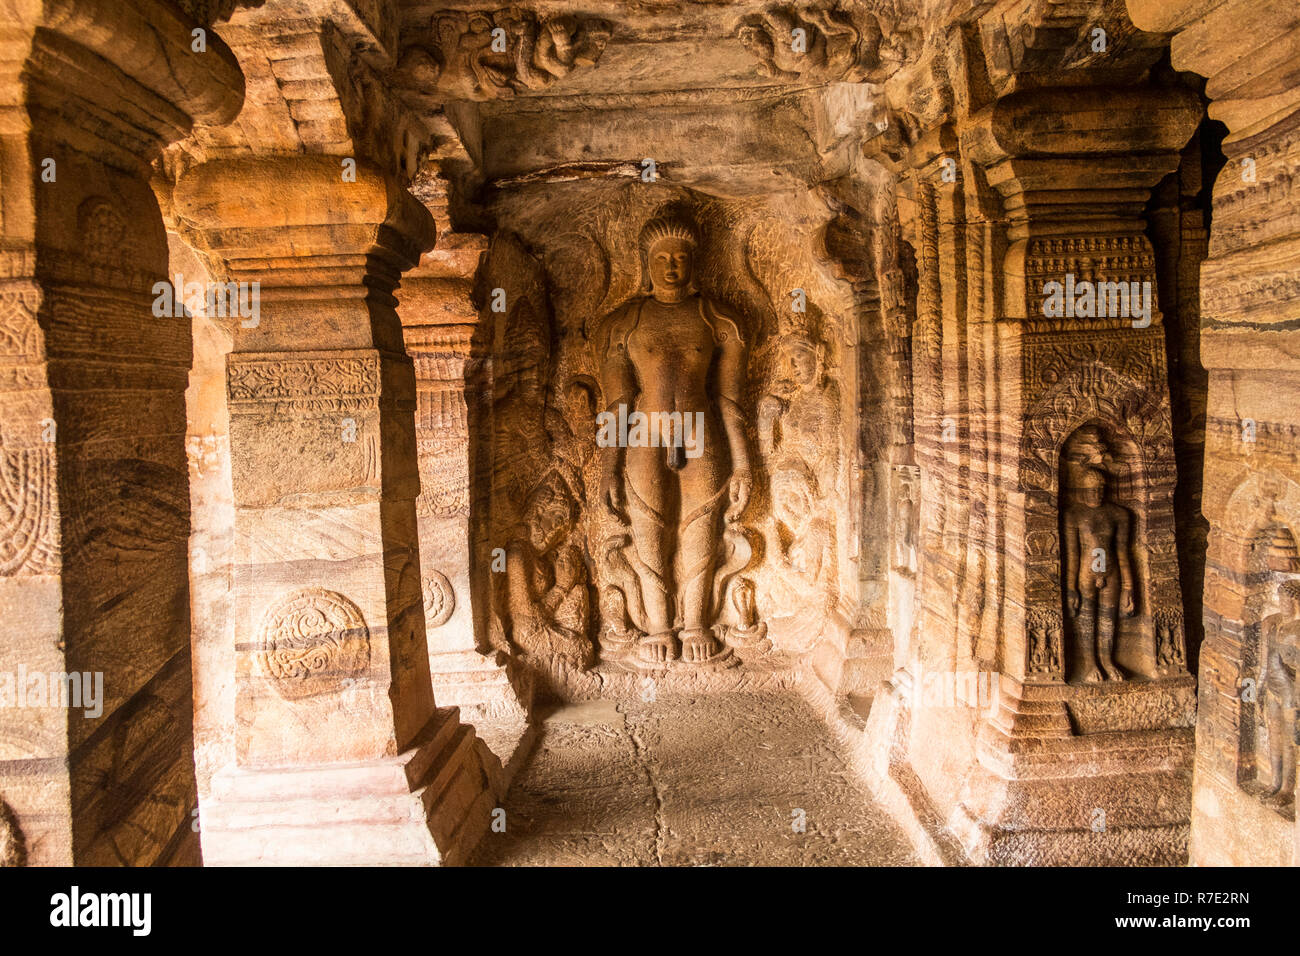 Bahubali debout dans une posture Kayotsarga méditer en vigne enroulée autour de sa jambe, dans la grotte 4 grottes de Badami Banque D'Images